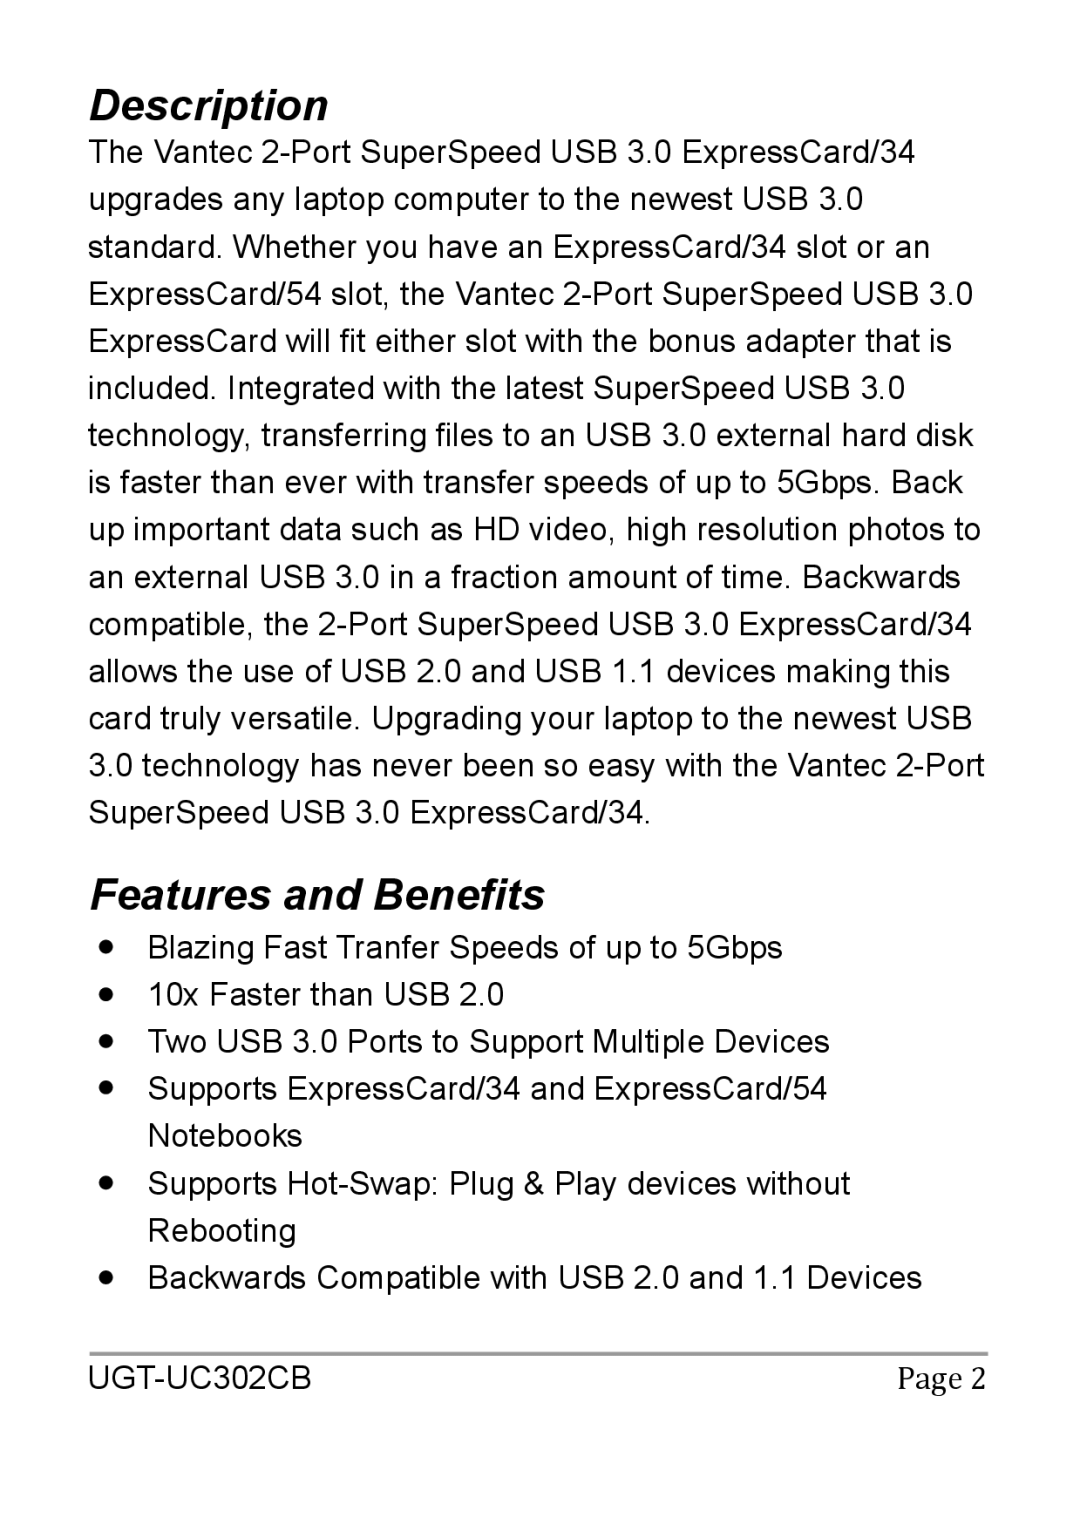 Vantec UGT-UC302CB user manual Description, Features and Benefits 